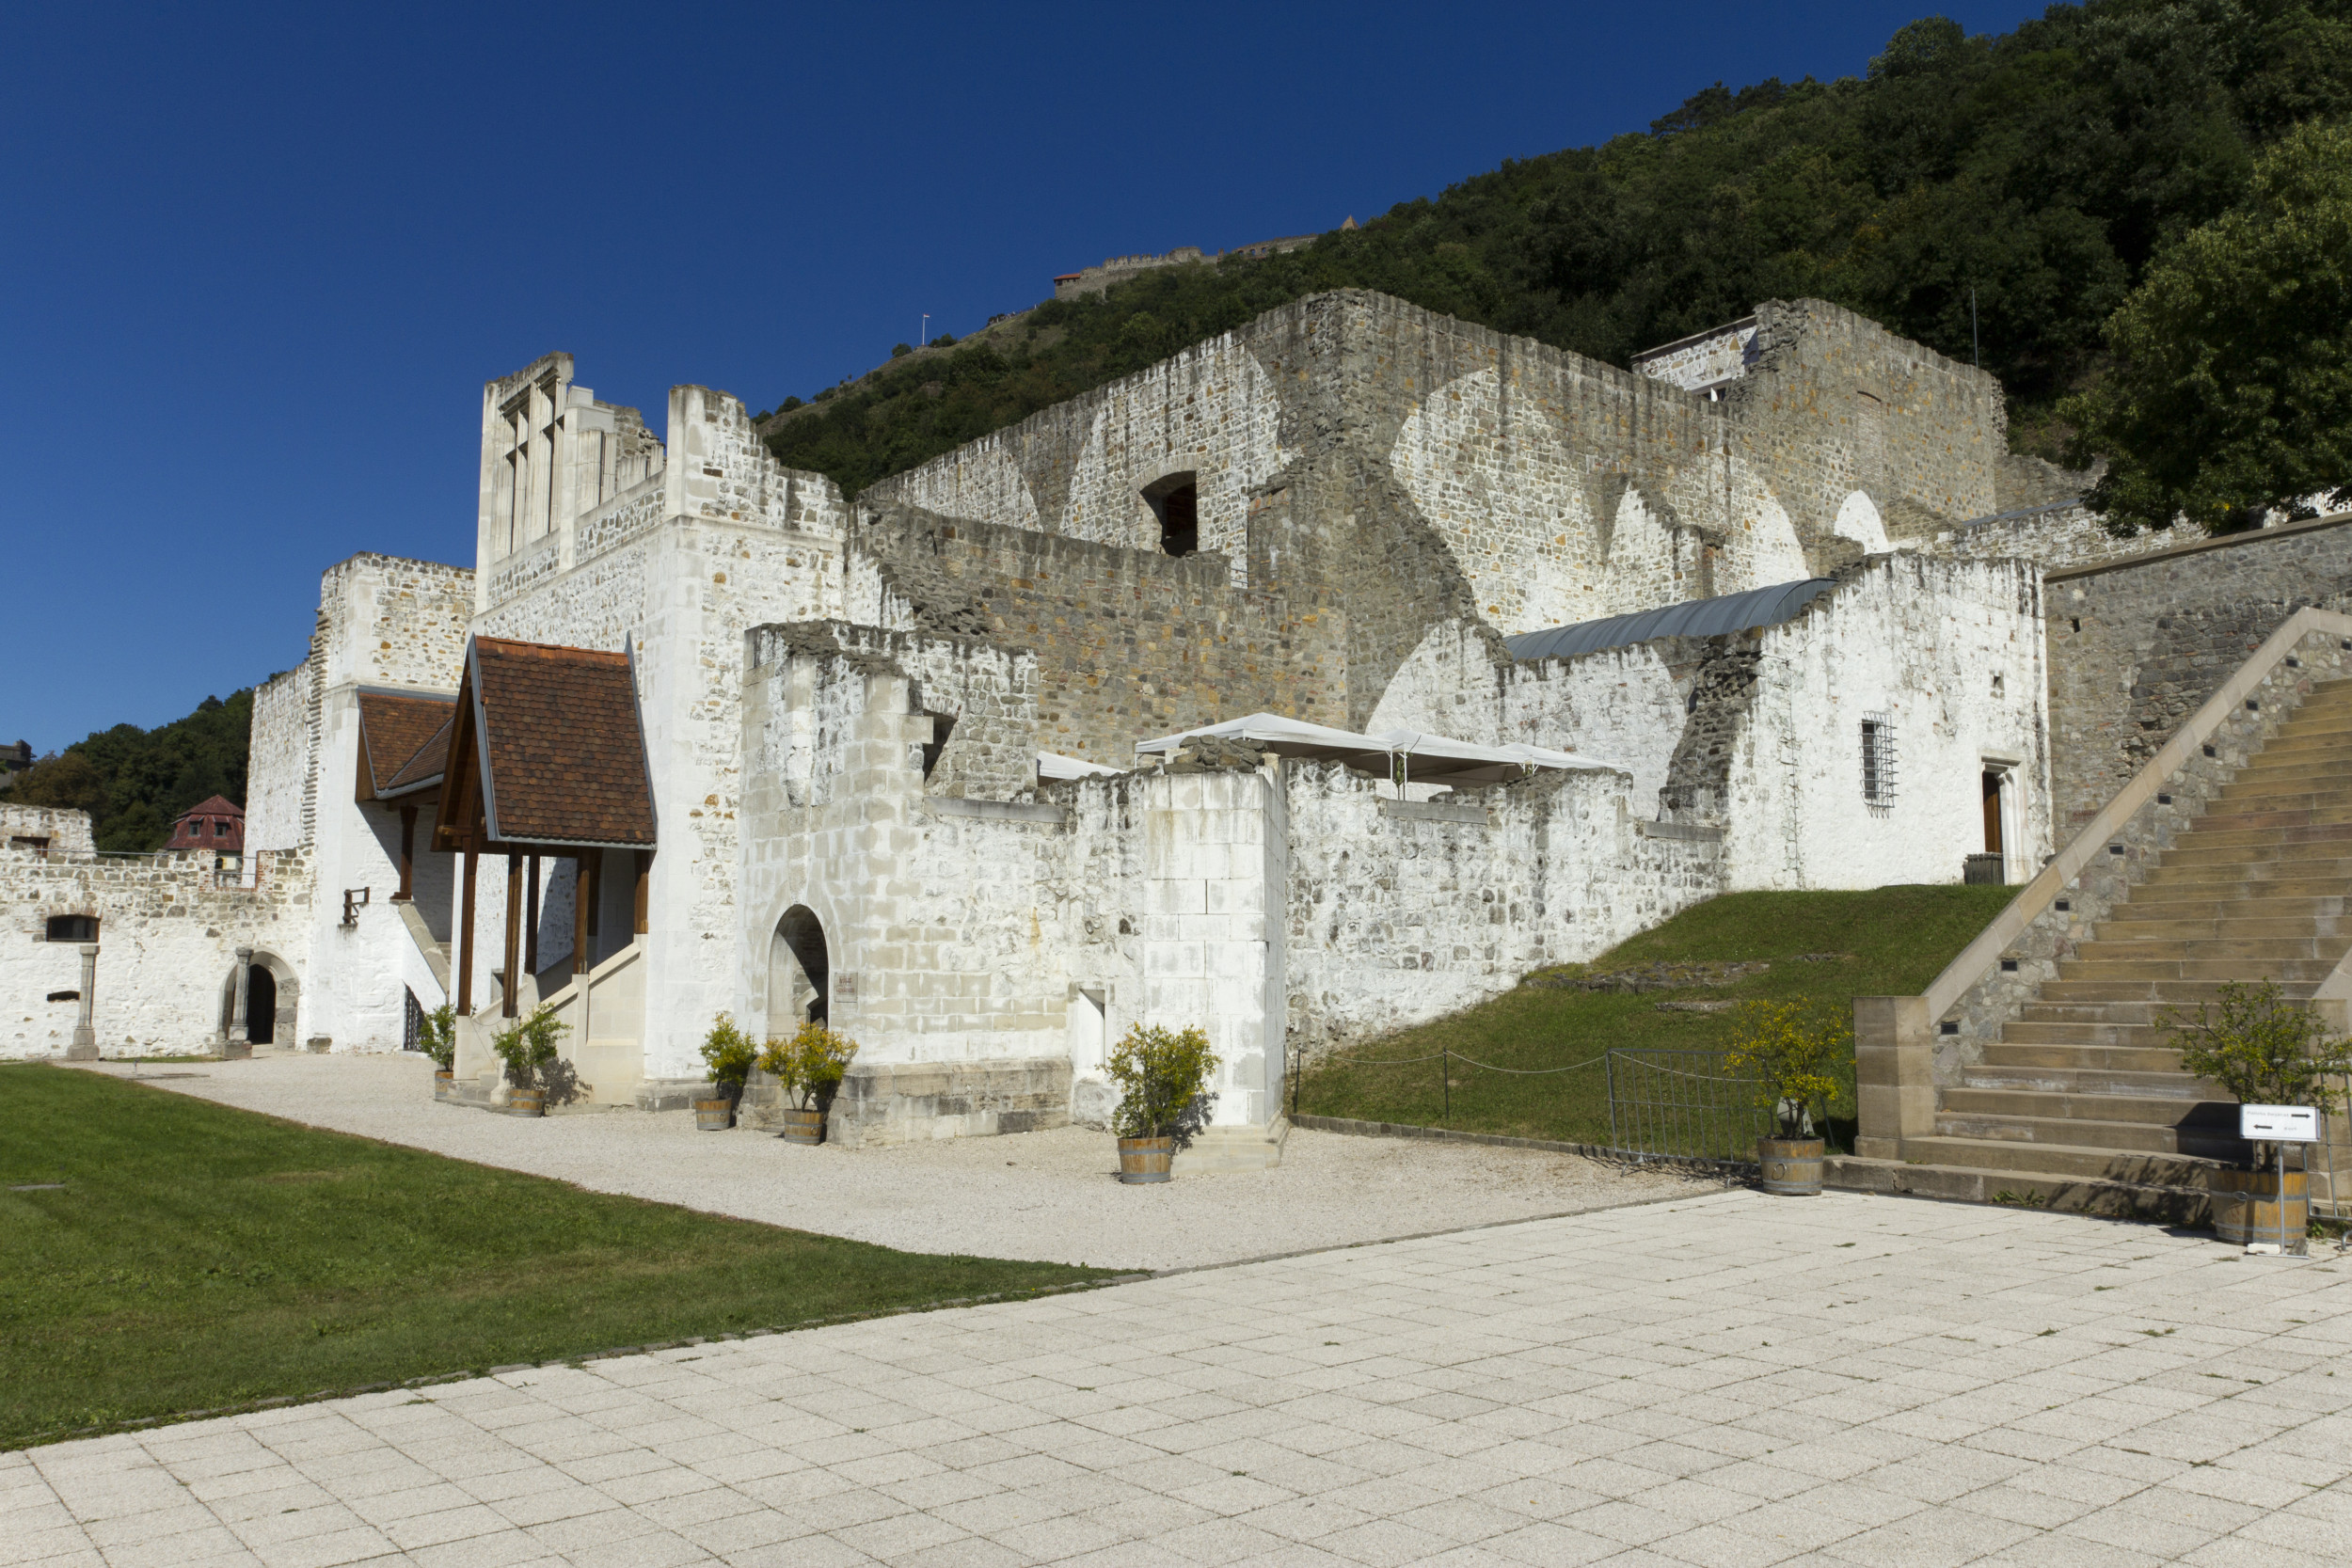 L’église perdue d’un monastère vieux de 600 ans retrouvée près du palais royal médiéval